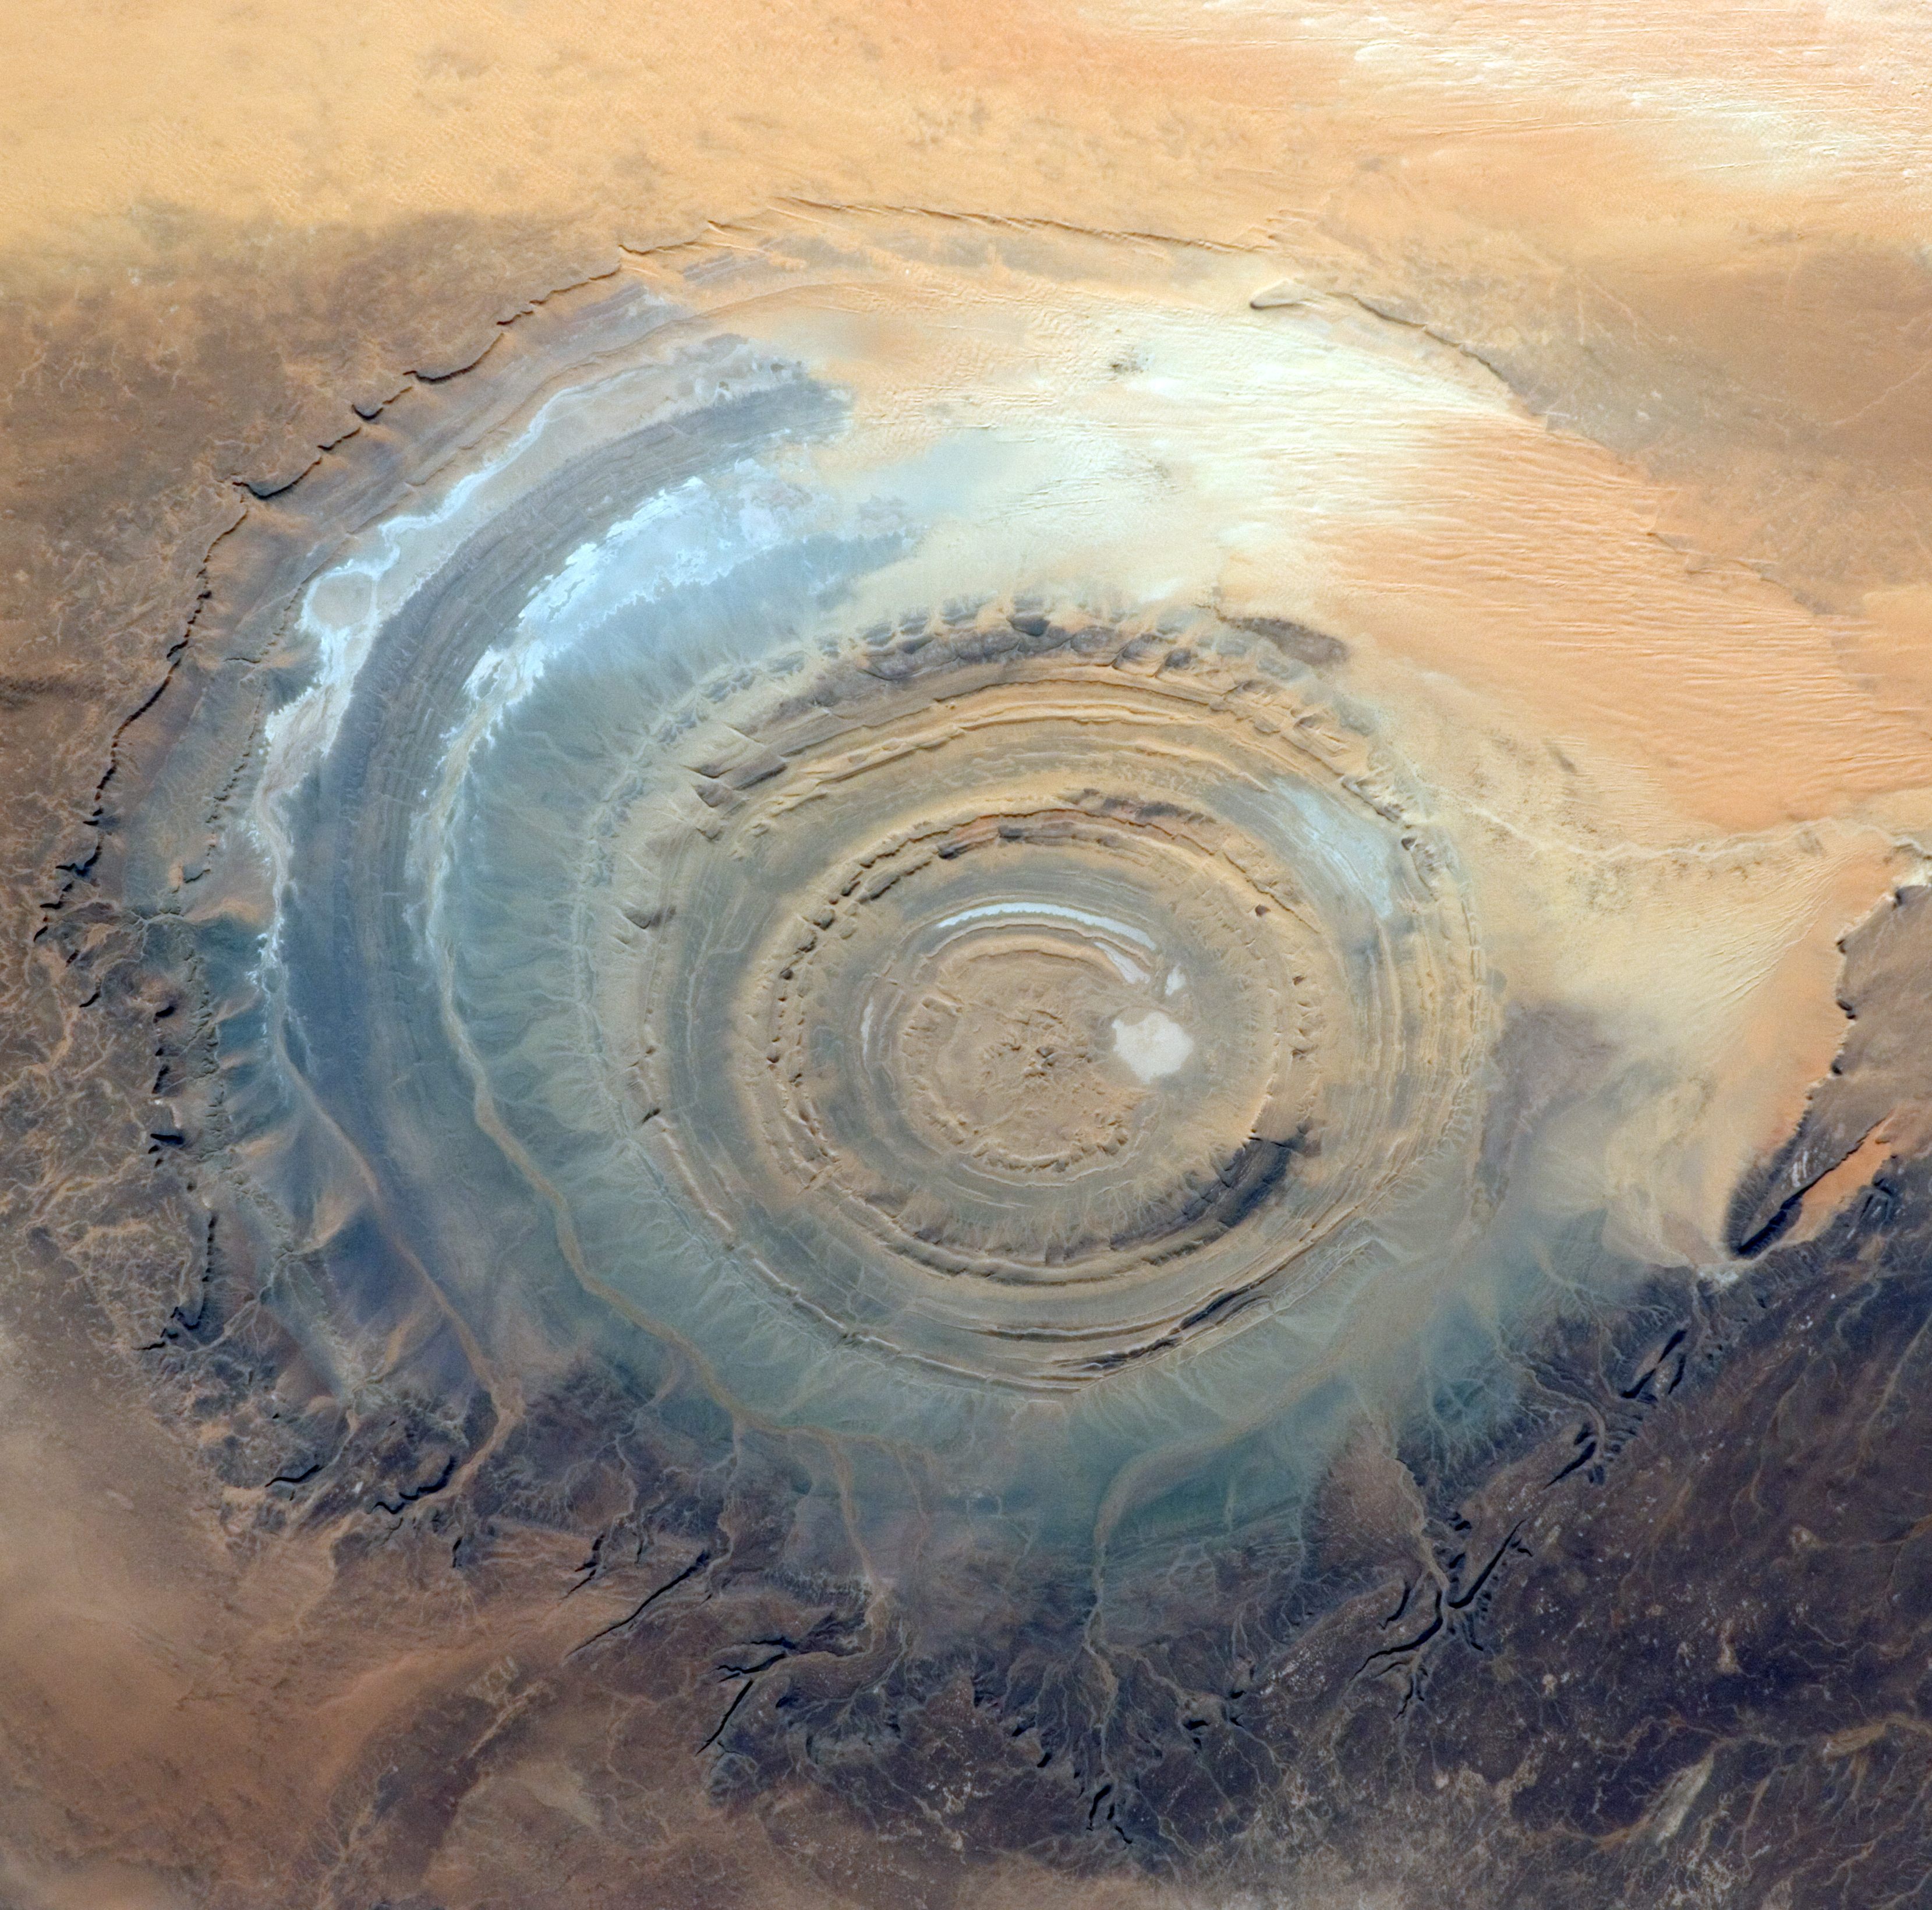 Richatformationen (Saharas öga) i Mauretanien.